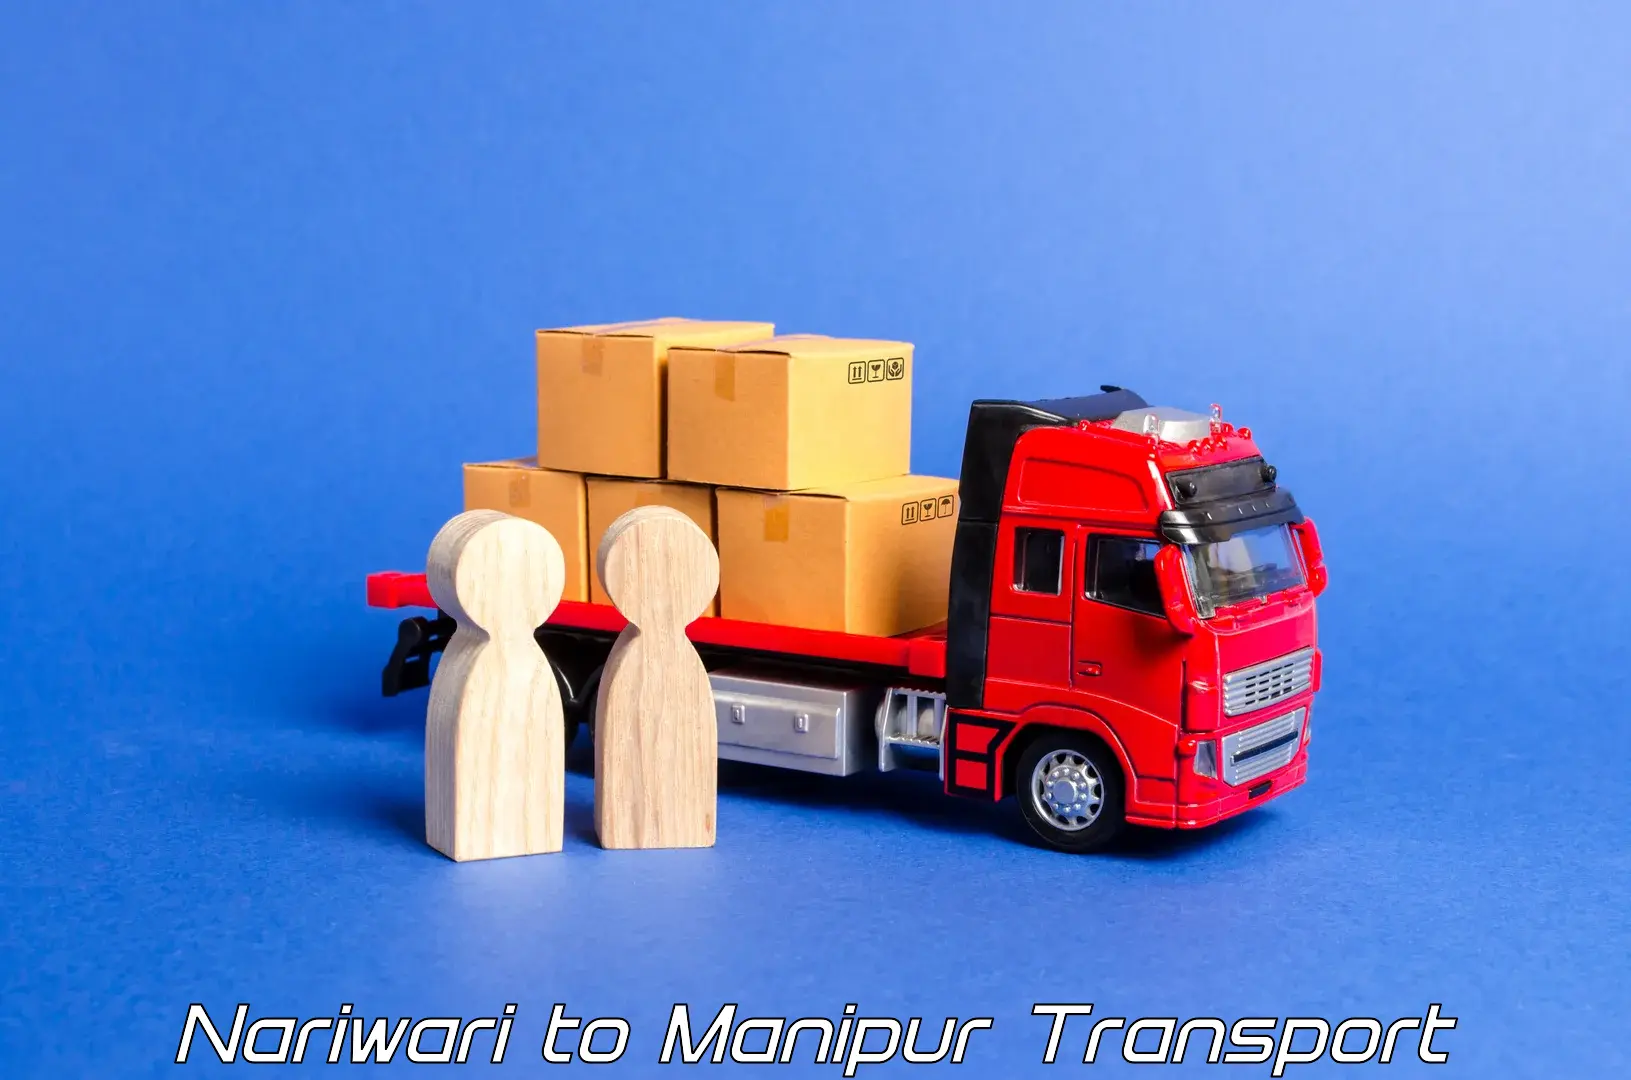 Cargo train transport services Nariwari to Moirang